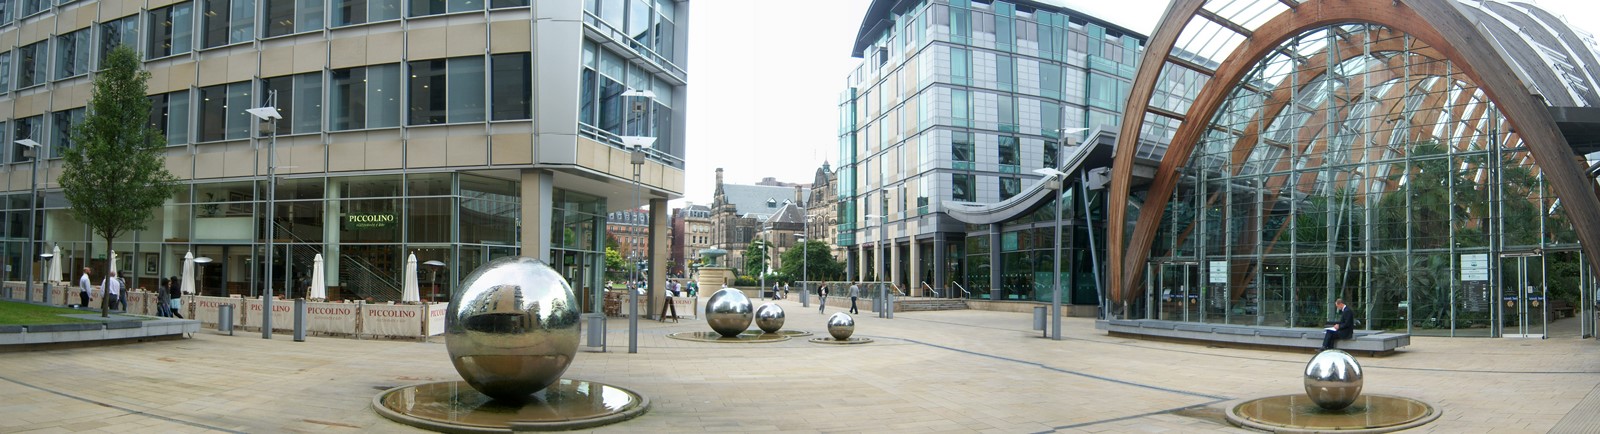 Panorama of Millennium Square